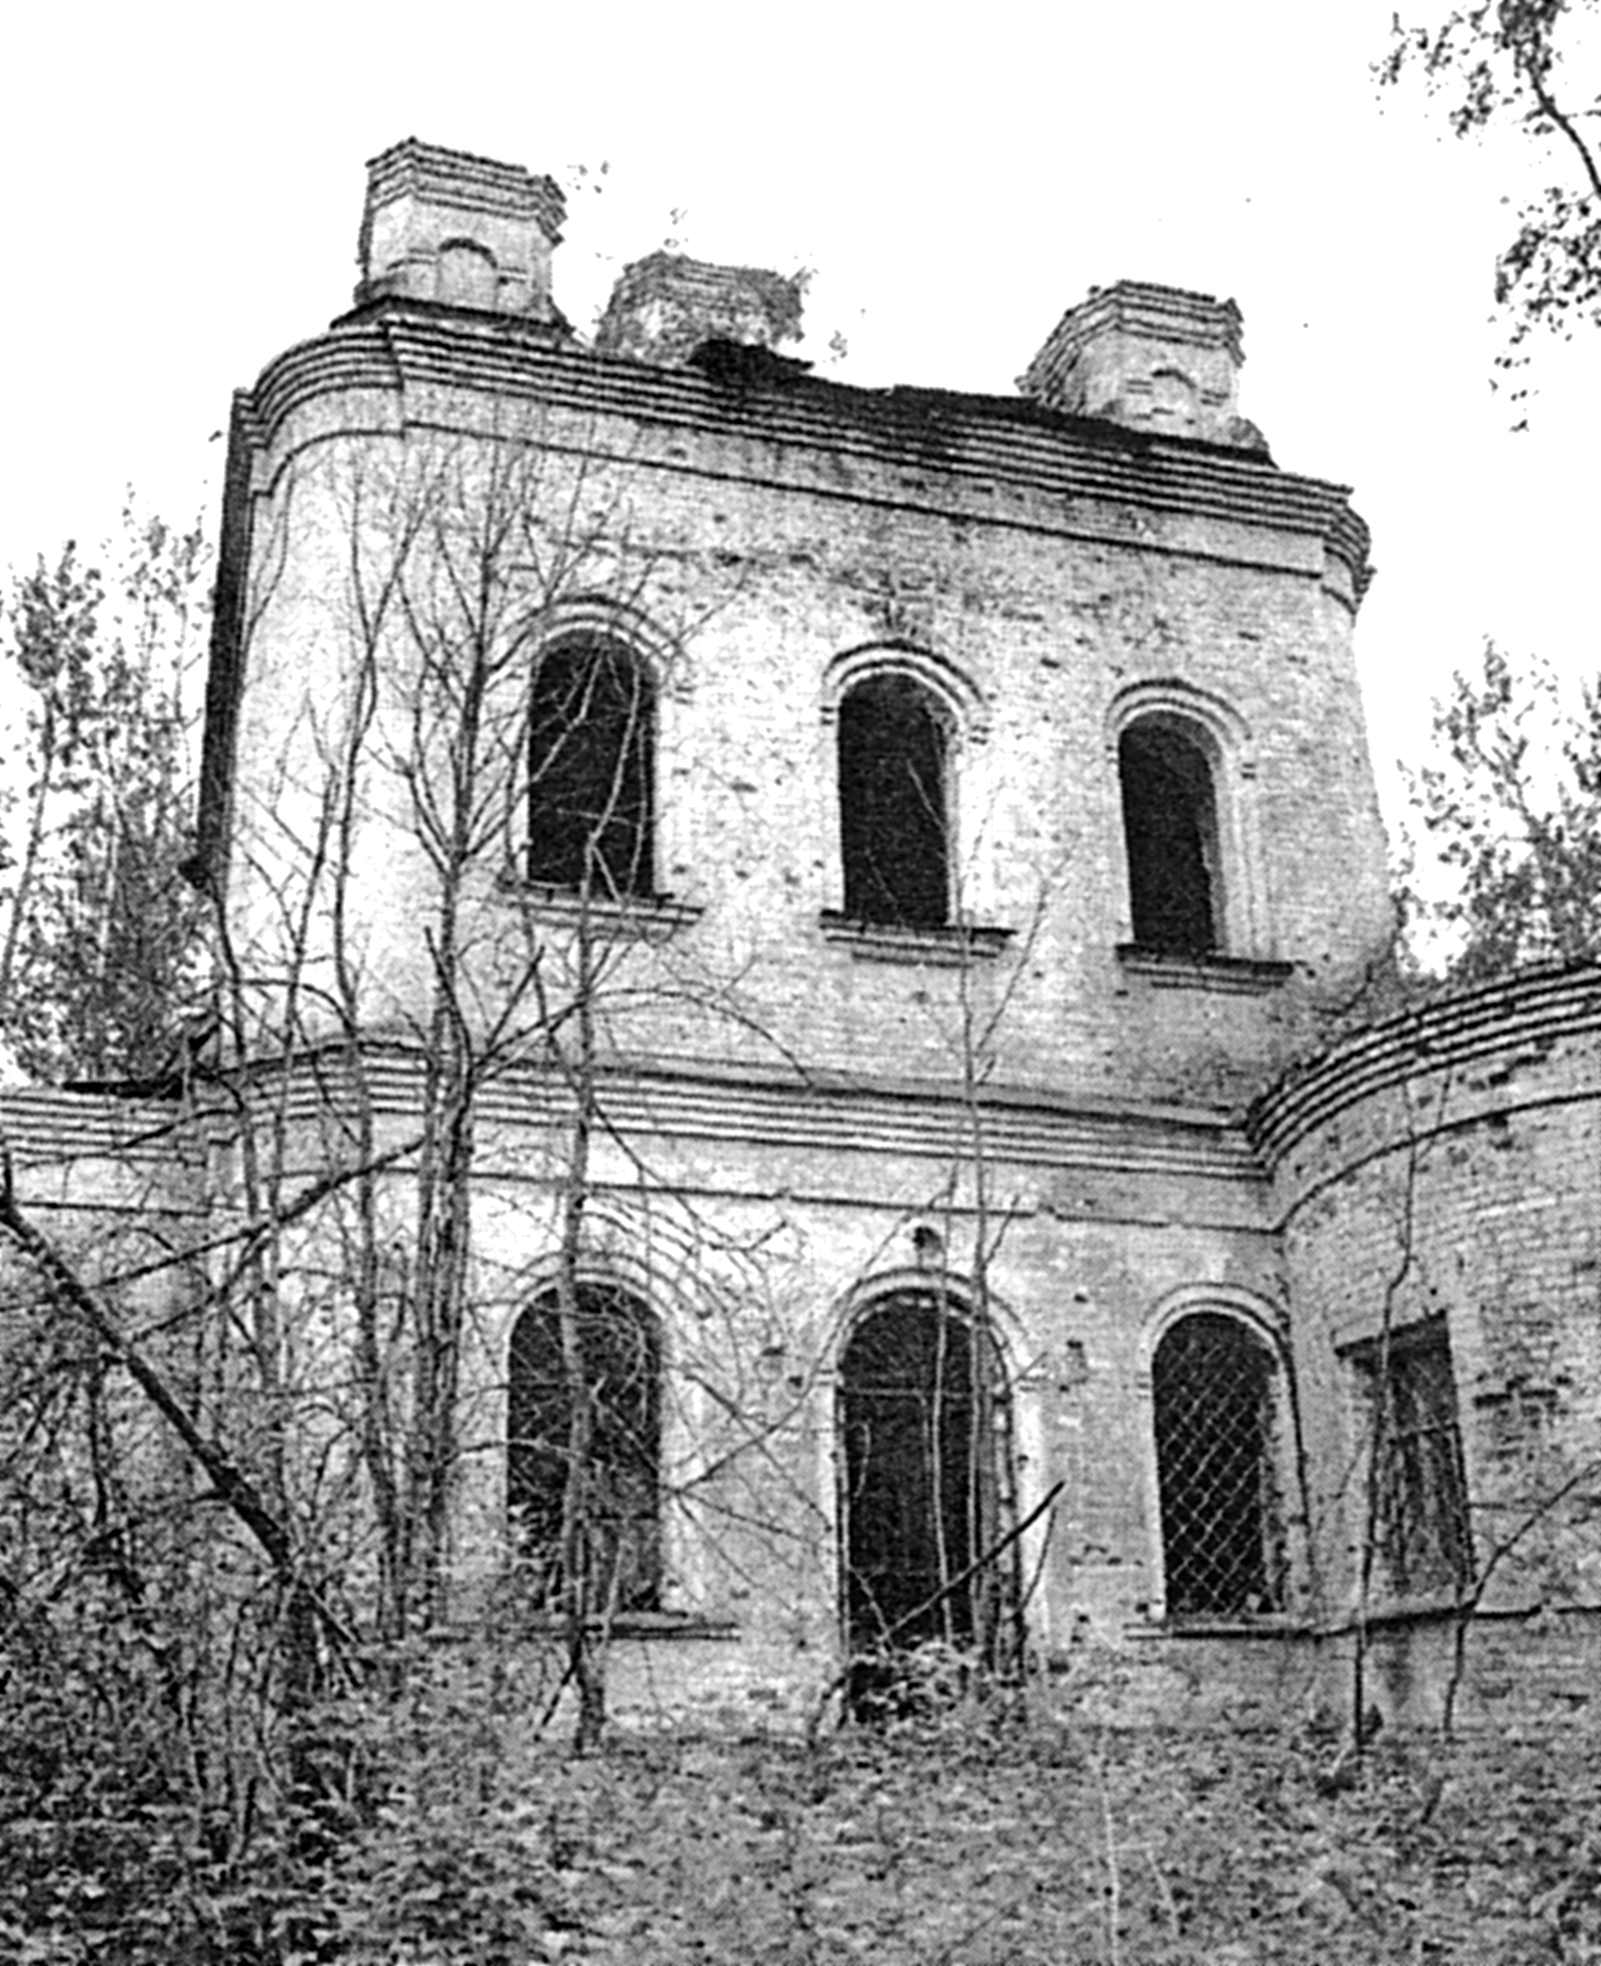 Ризоположенская церковь с. Озерки. Северный фасад. фото 2000 года.